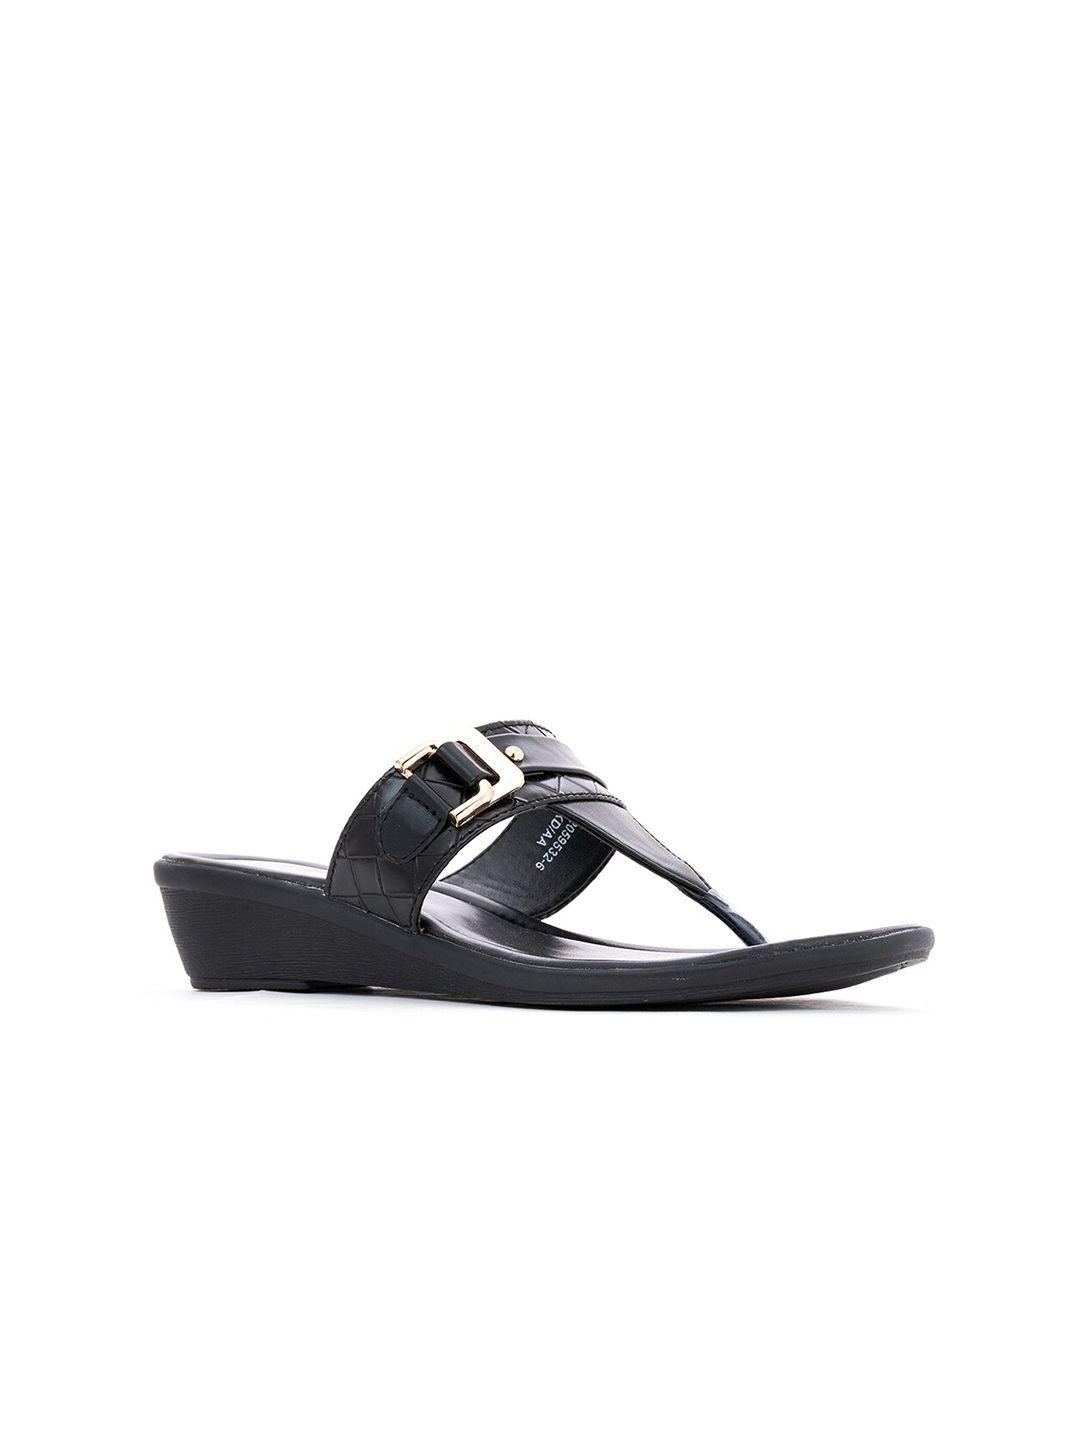 khadims black solid comfort heels with buckles